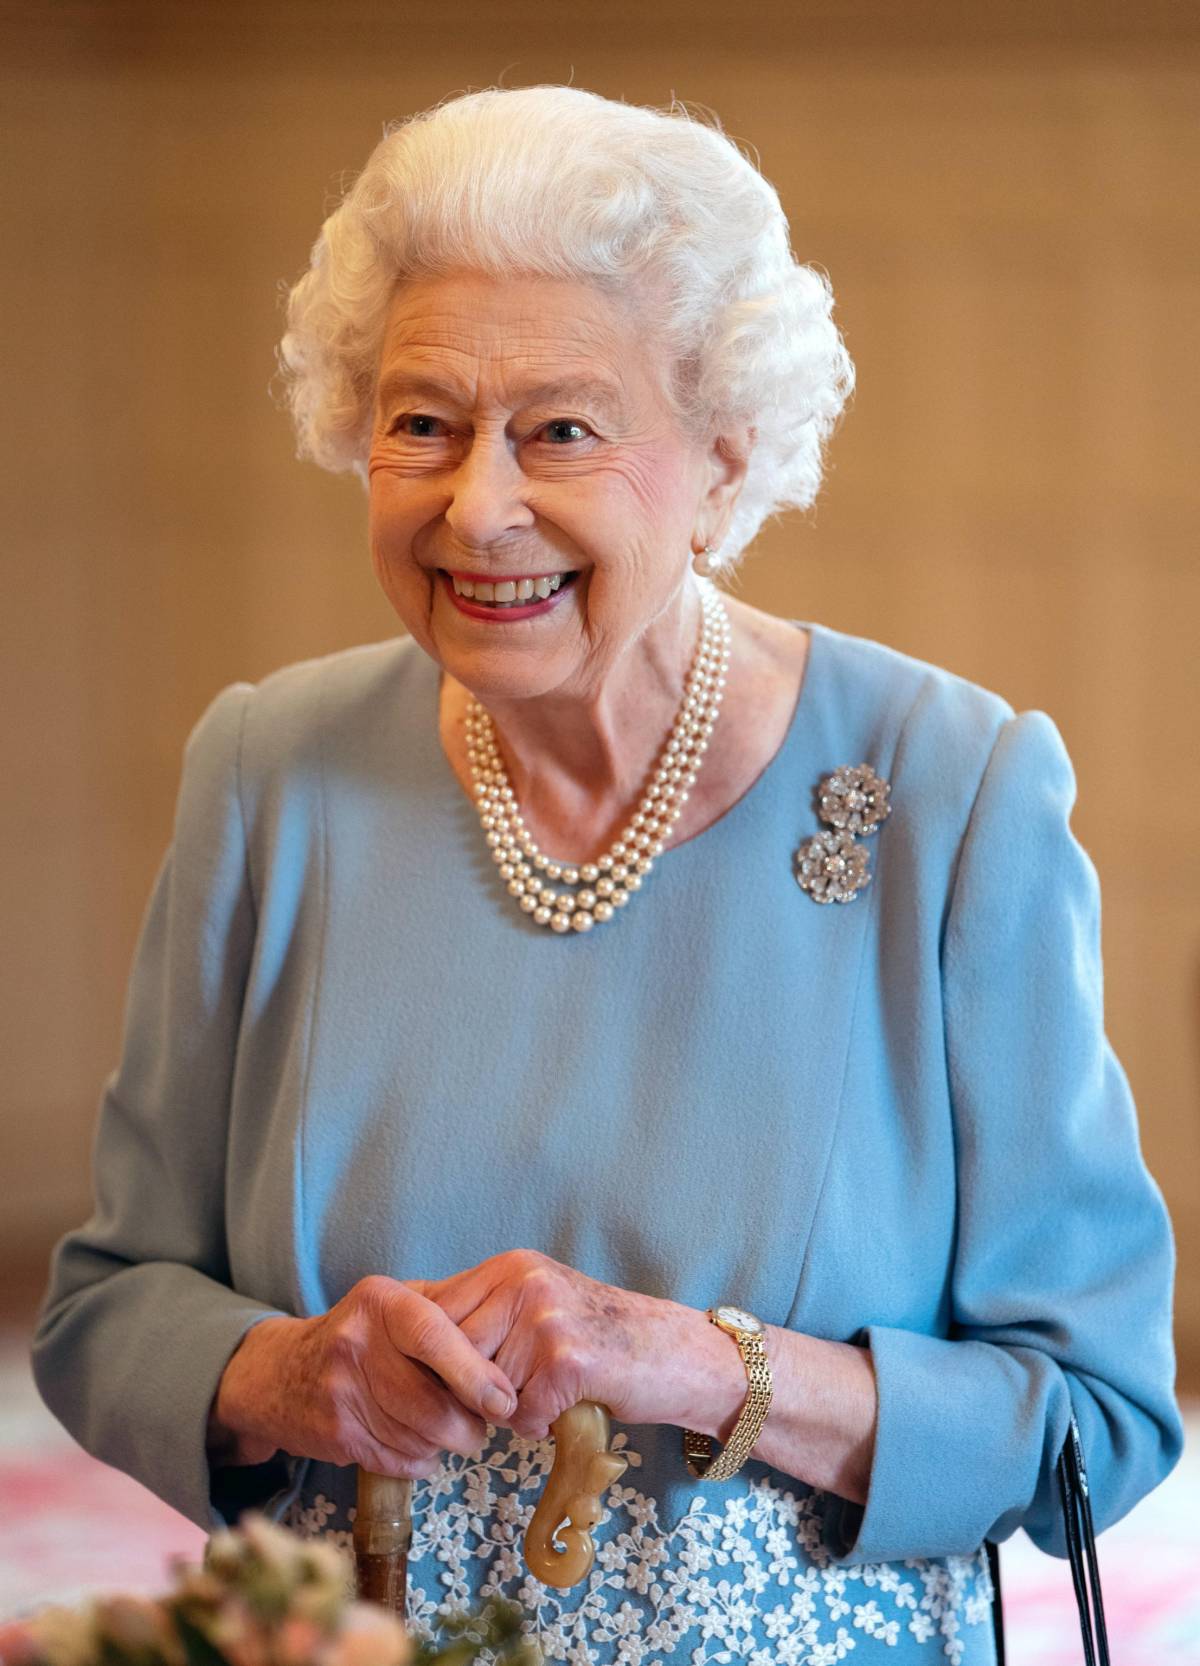 La regina Elisabetta di nuovo in pubblico senza bastone